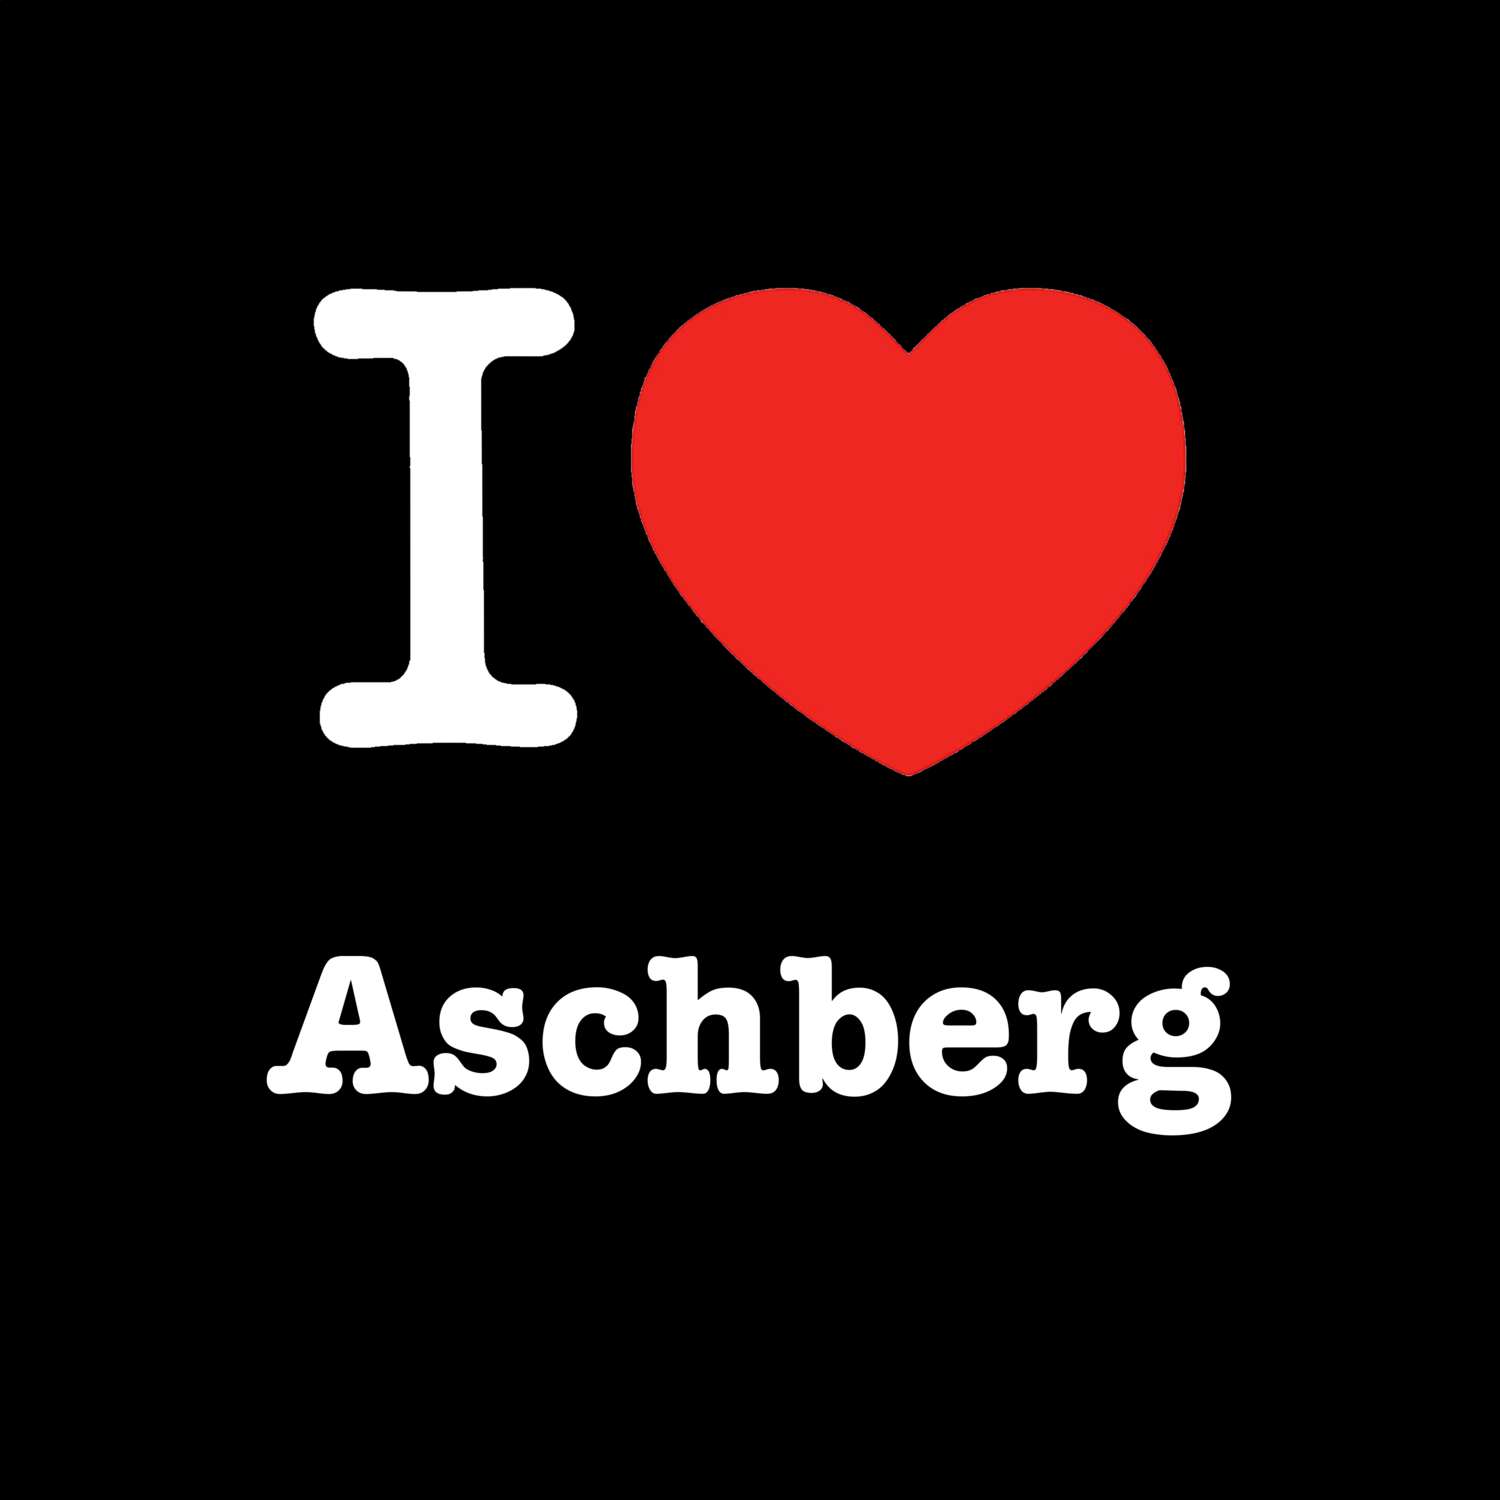 Aschberg T-Shirt »I love«